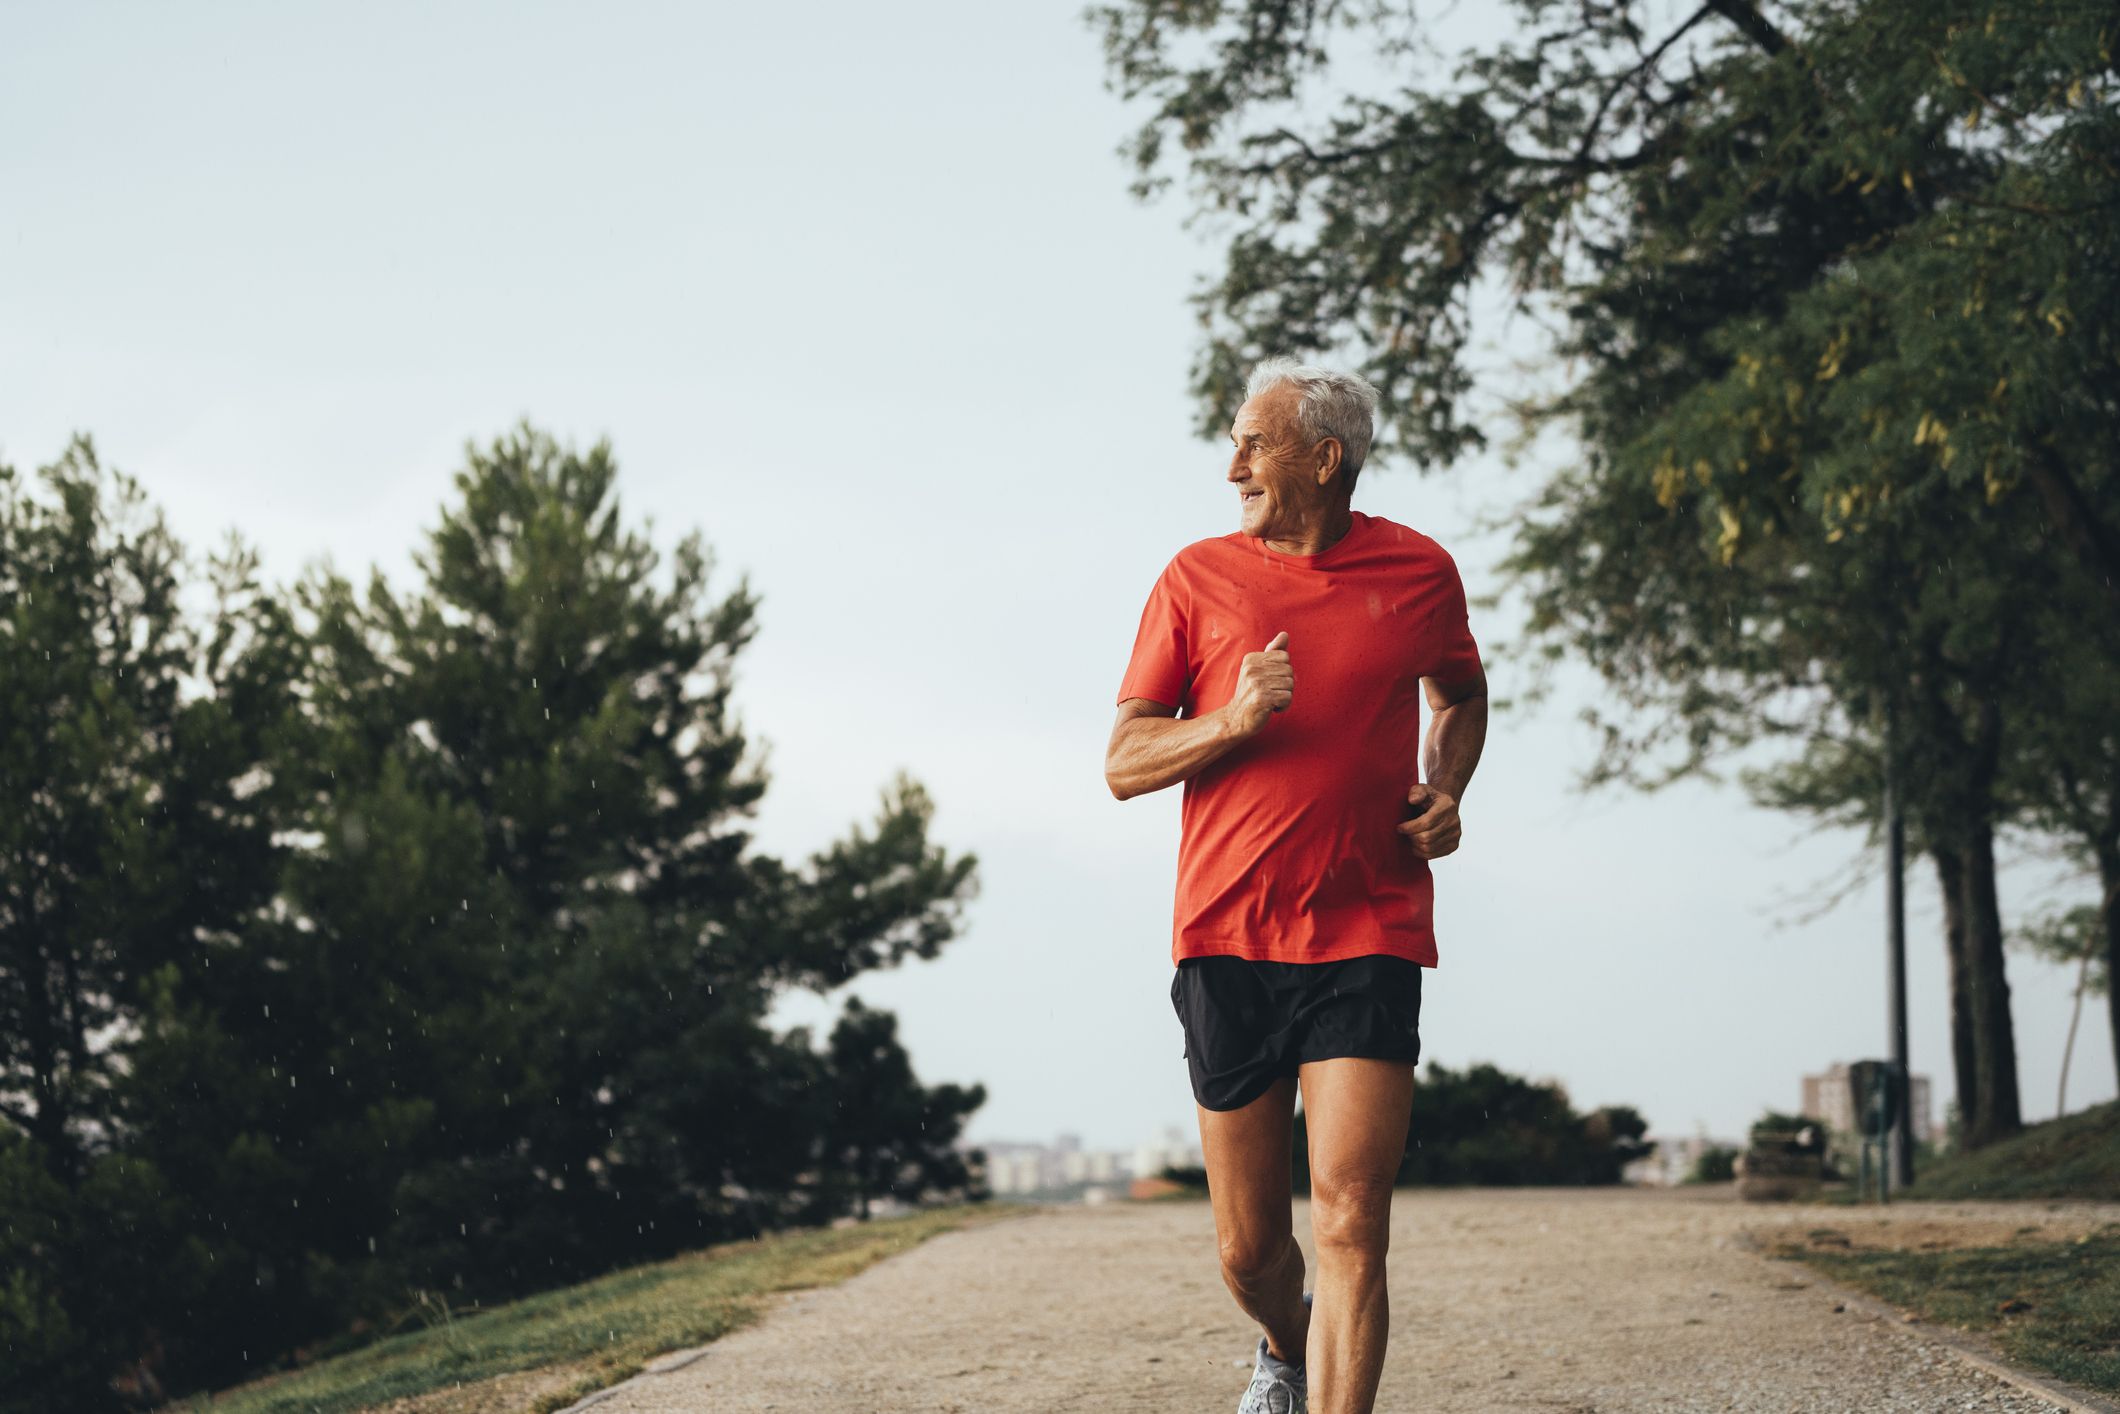 Running for Seniors: Tips for Running as an Older Adult